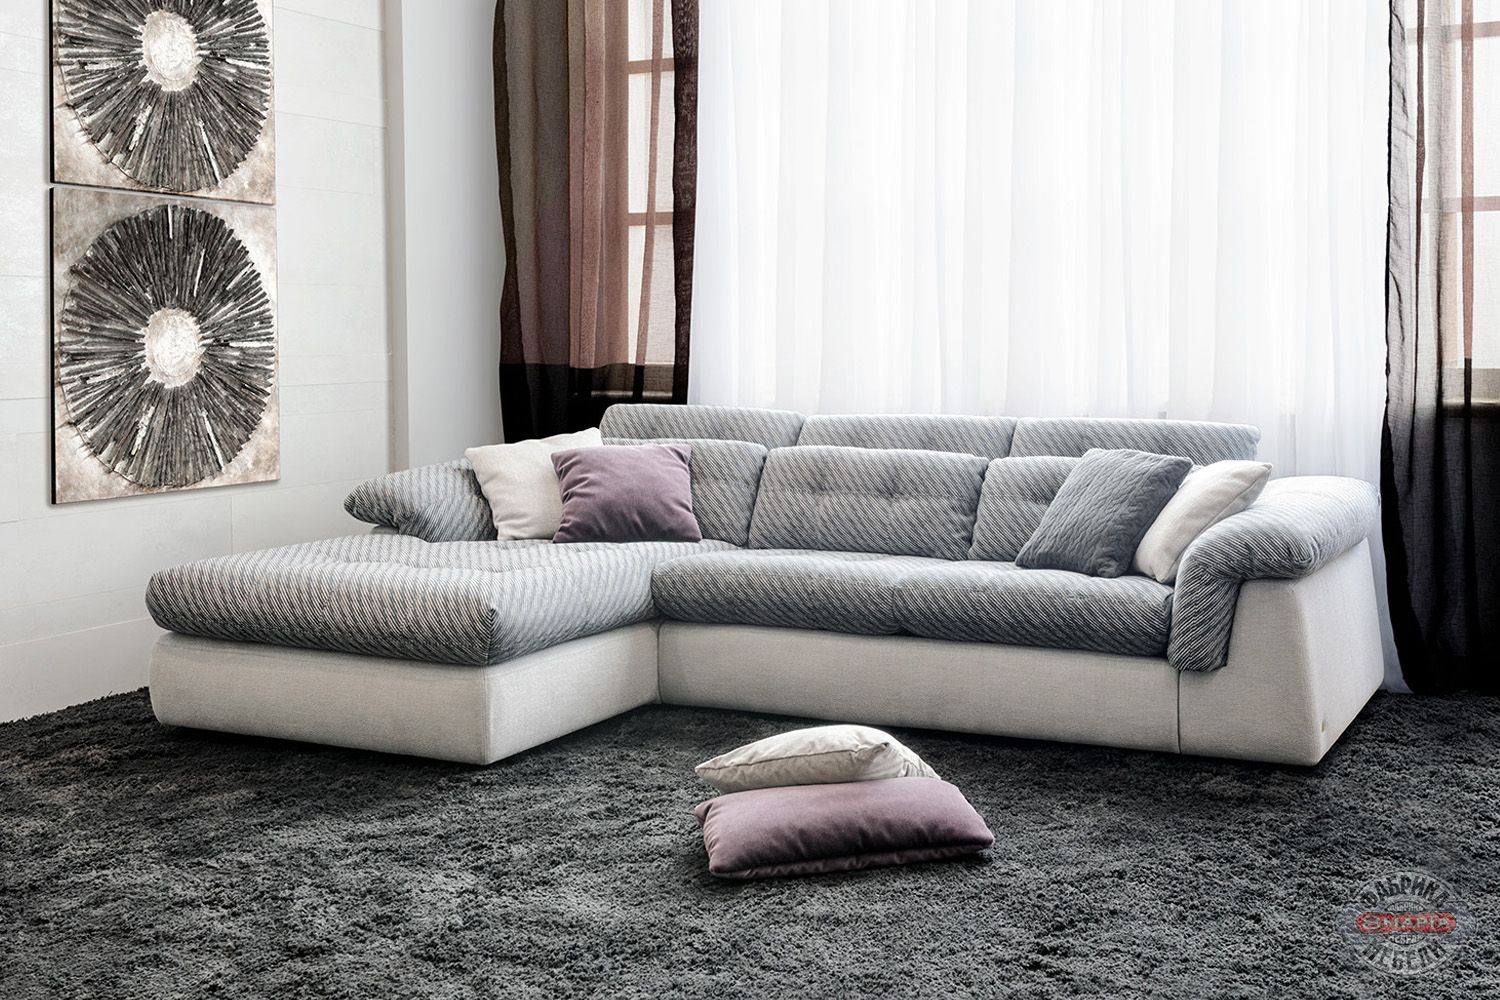  Модульный диван Савой, фото 1 